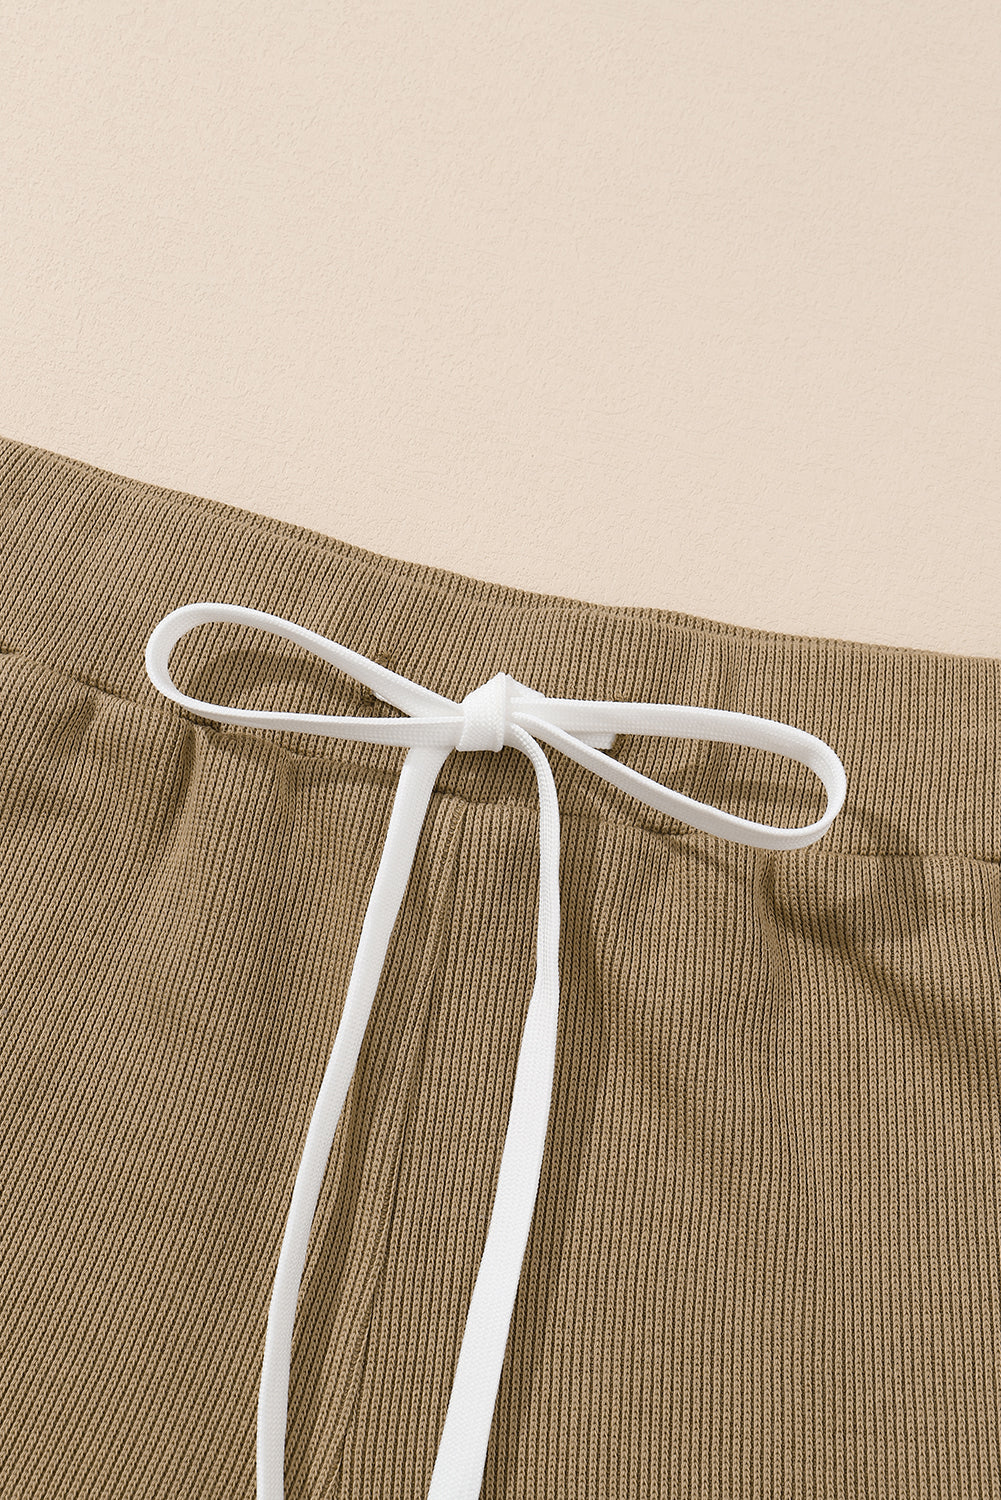 Khakifarbenes, langärmliges Top-Shorts-Set mit sichtbaren Nähten und Struktur